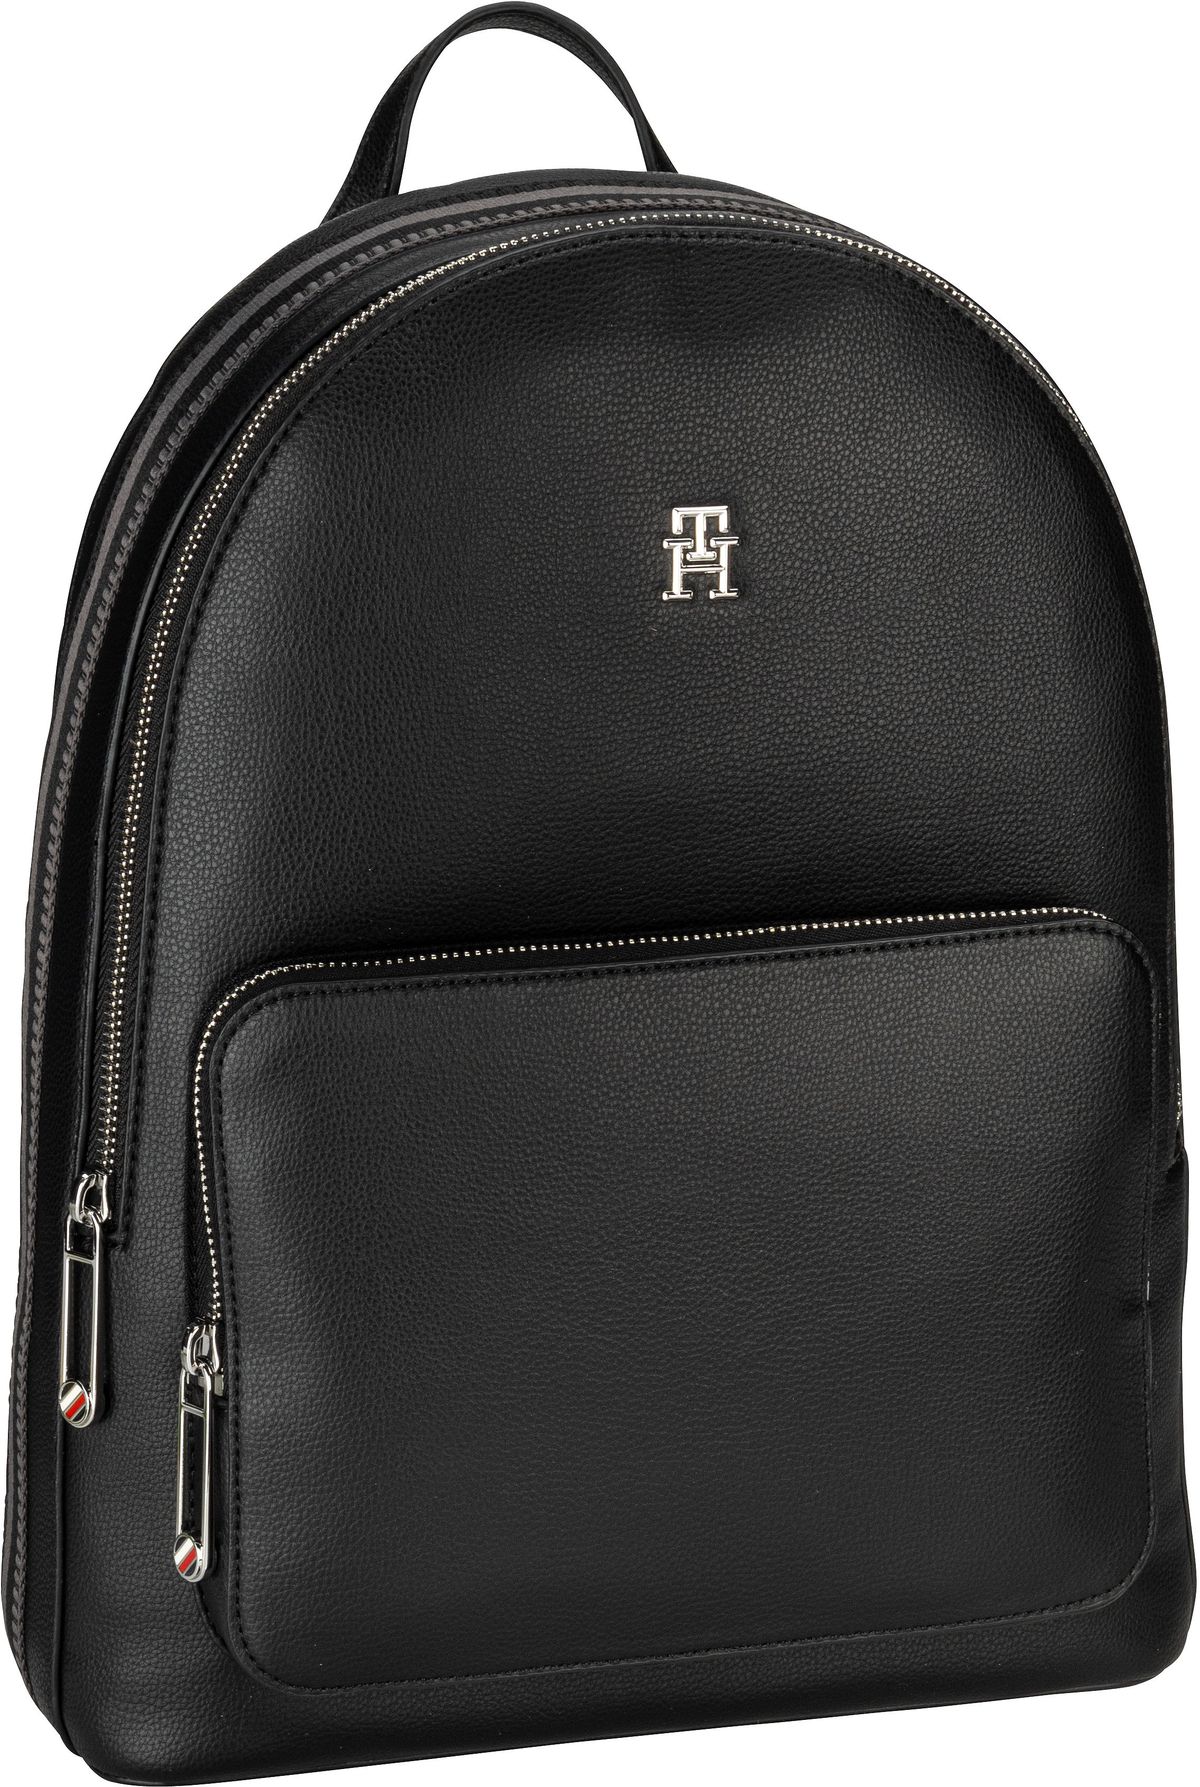 Tommy Hilfiger TH Essential SC Backpack PSP24  in Schwarz (8.8 Liter), Rucksack / Backpack